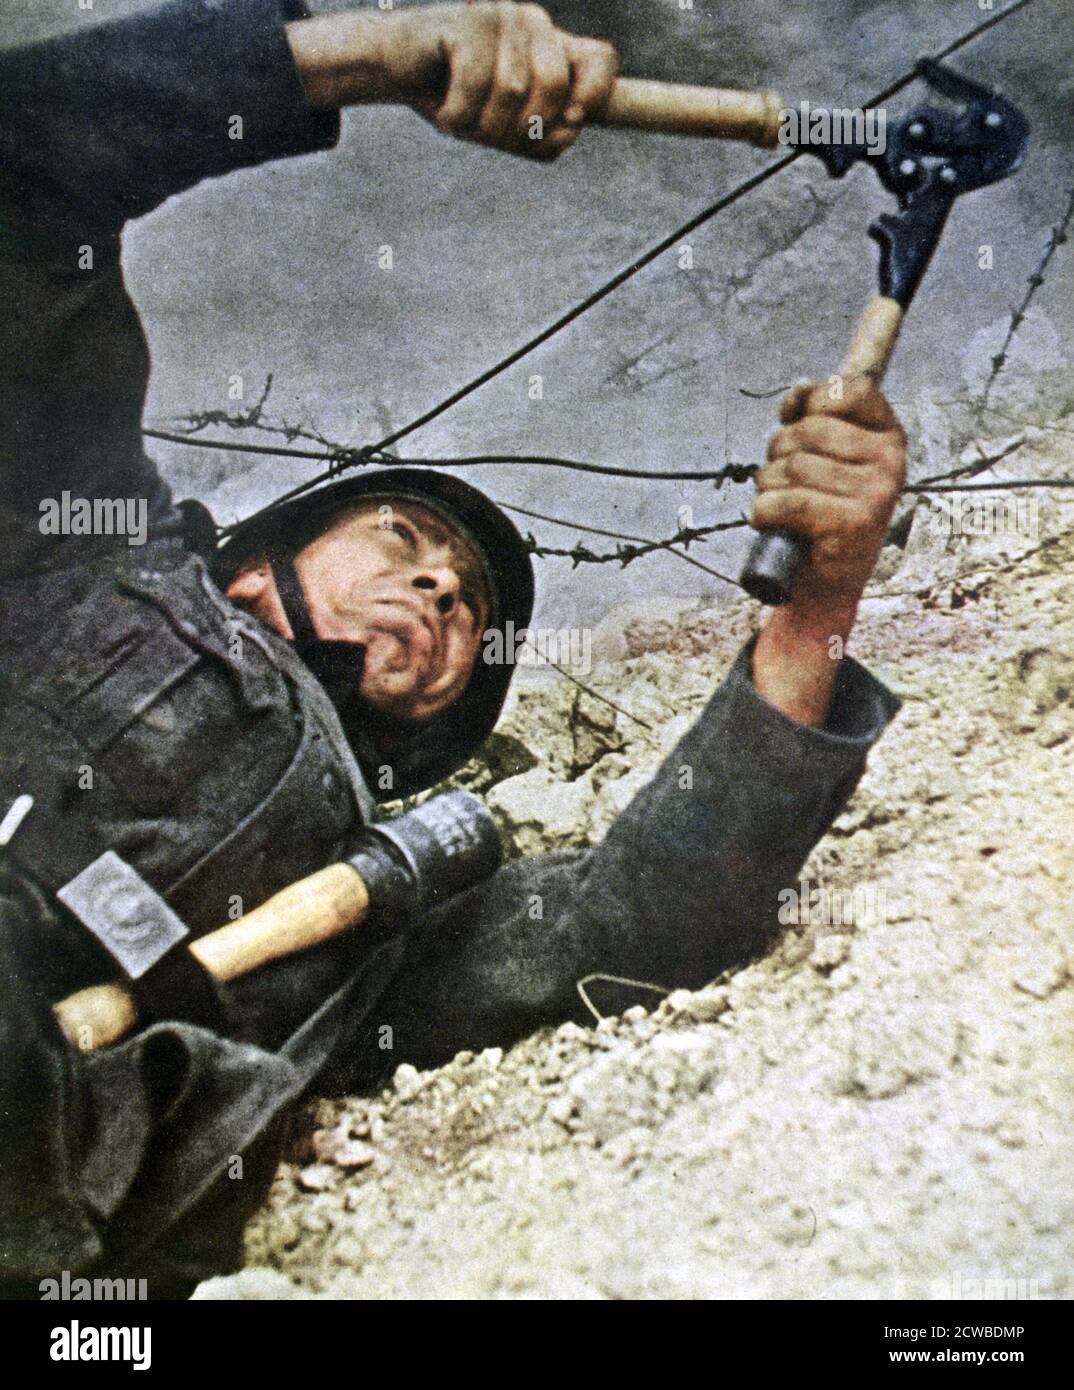 Un soldat allemand qui coupe des barbelés pendant un assaut, 1942. Un imprimé de signal, avril 1942. Signal est un magazine publié par le troisième Reich allemand de 1940 à 1945. L'artiste est inconnu. Banque D'Images